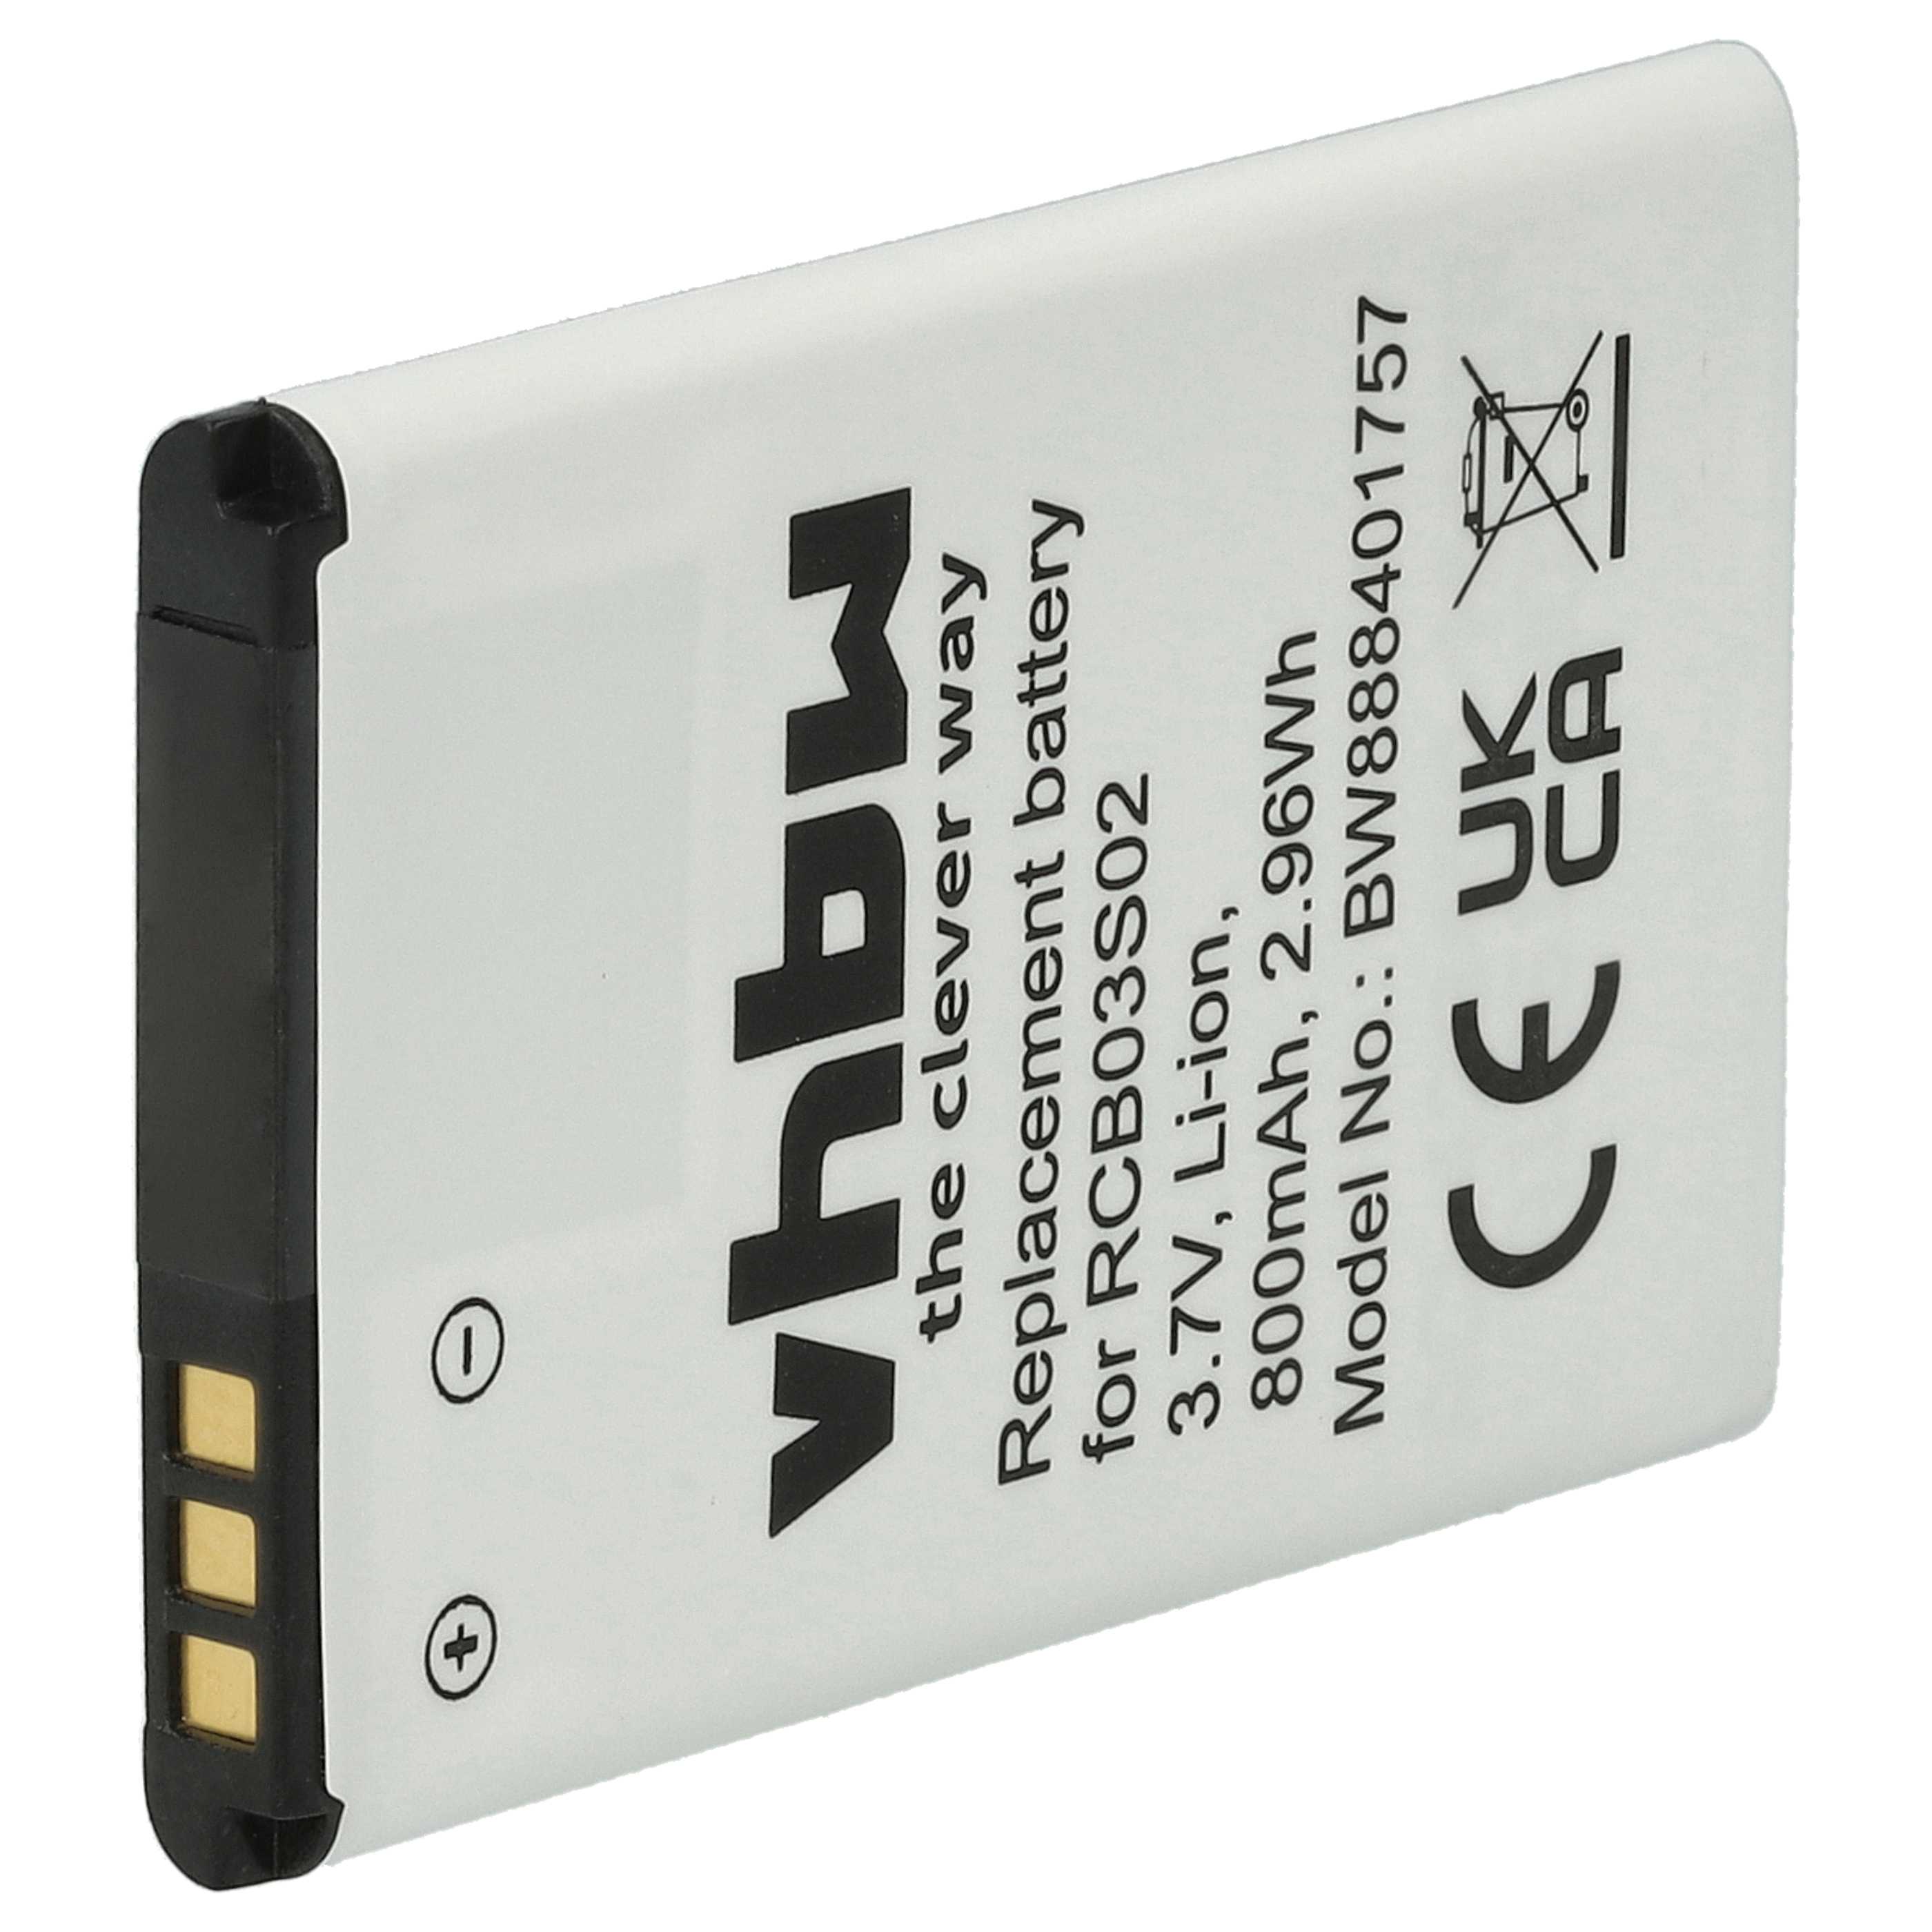 Batterie remplace Swisstone RCB03S02 pour téléphone portable senior - 800mAh, 3,7V, Li-ion